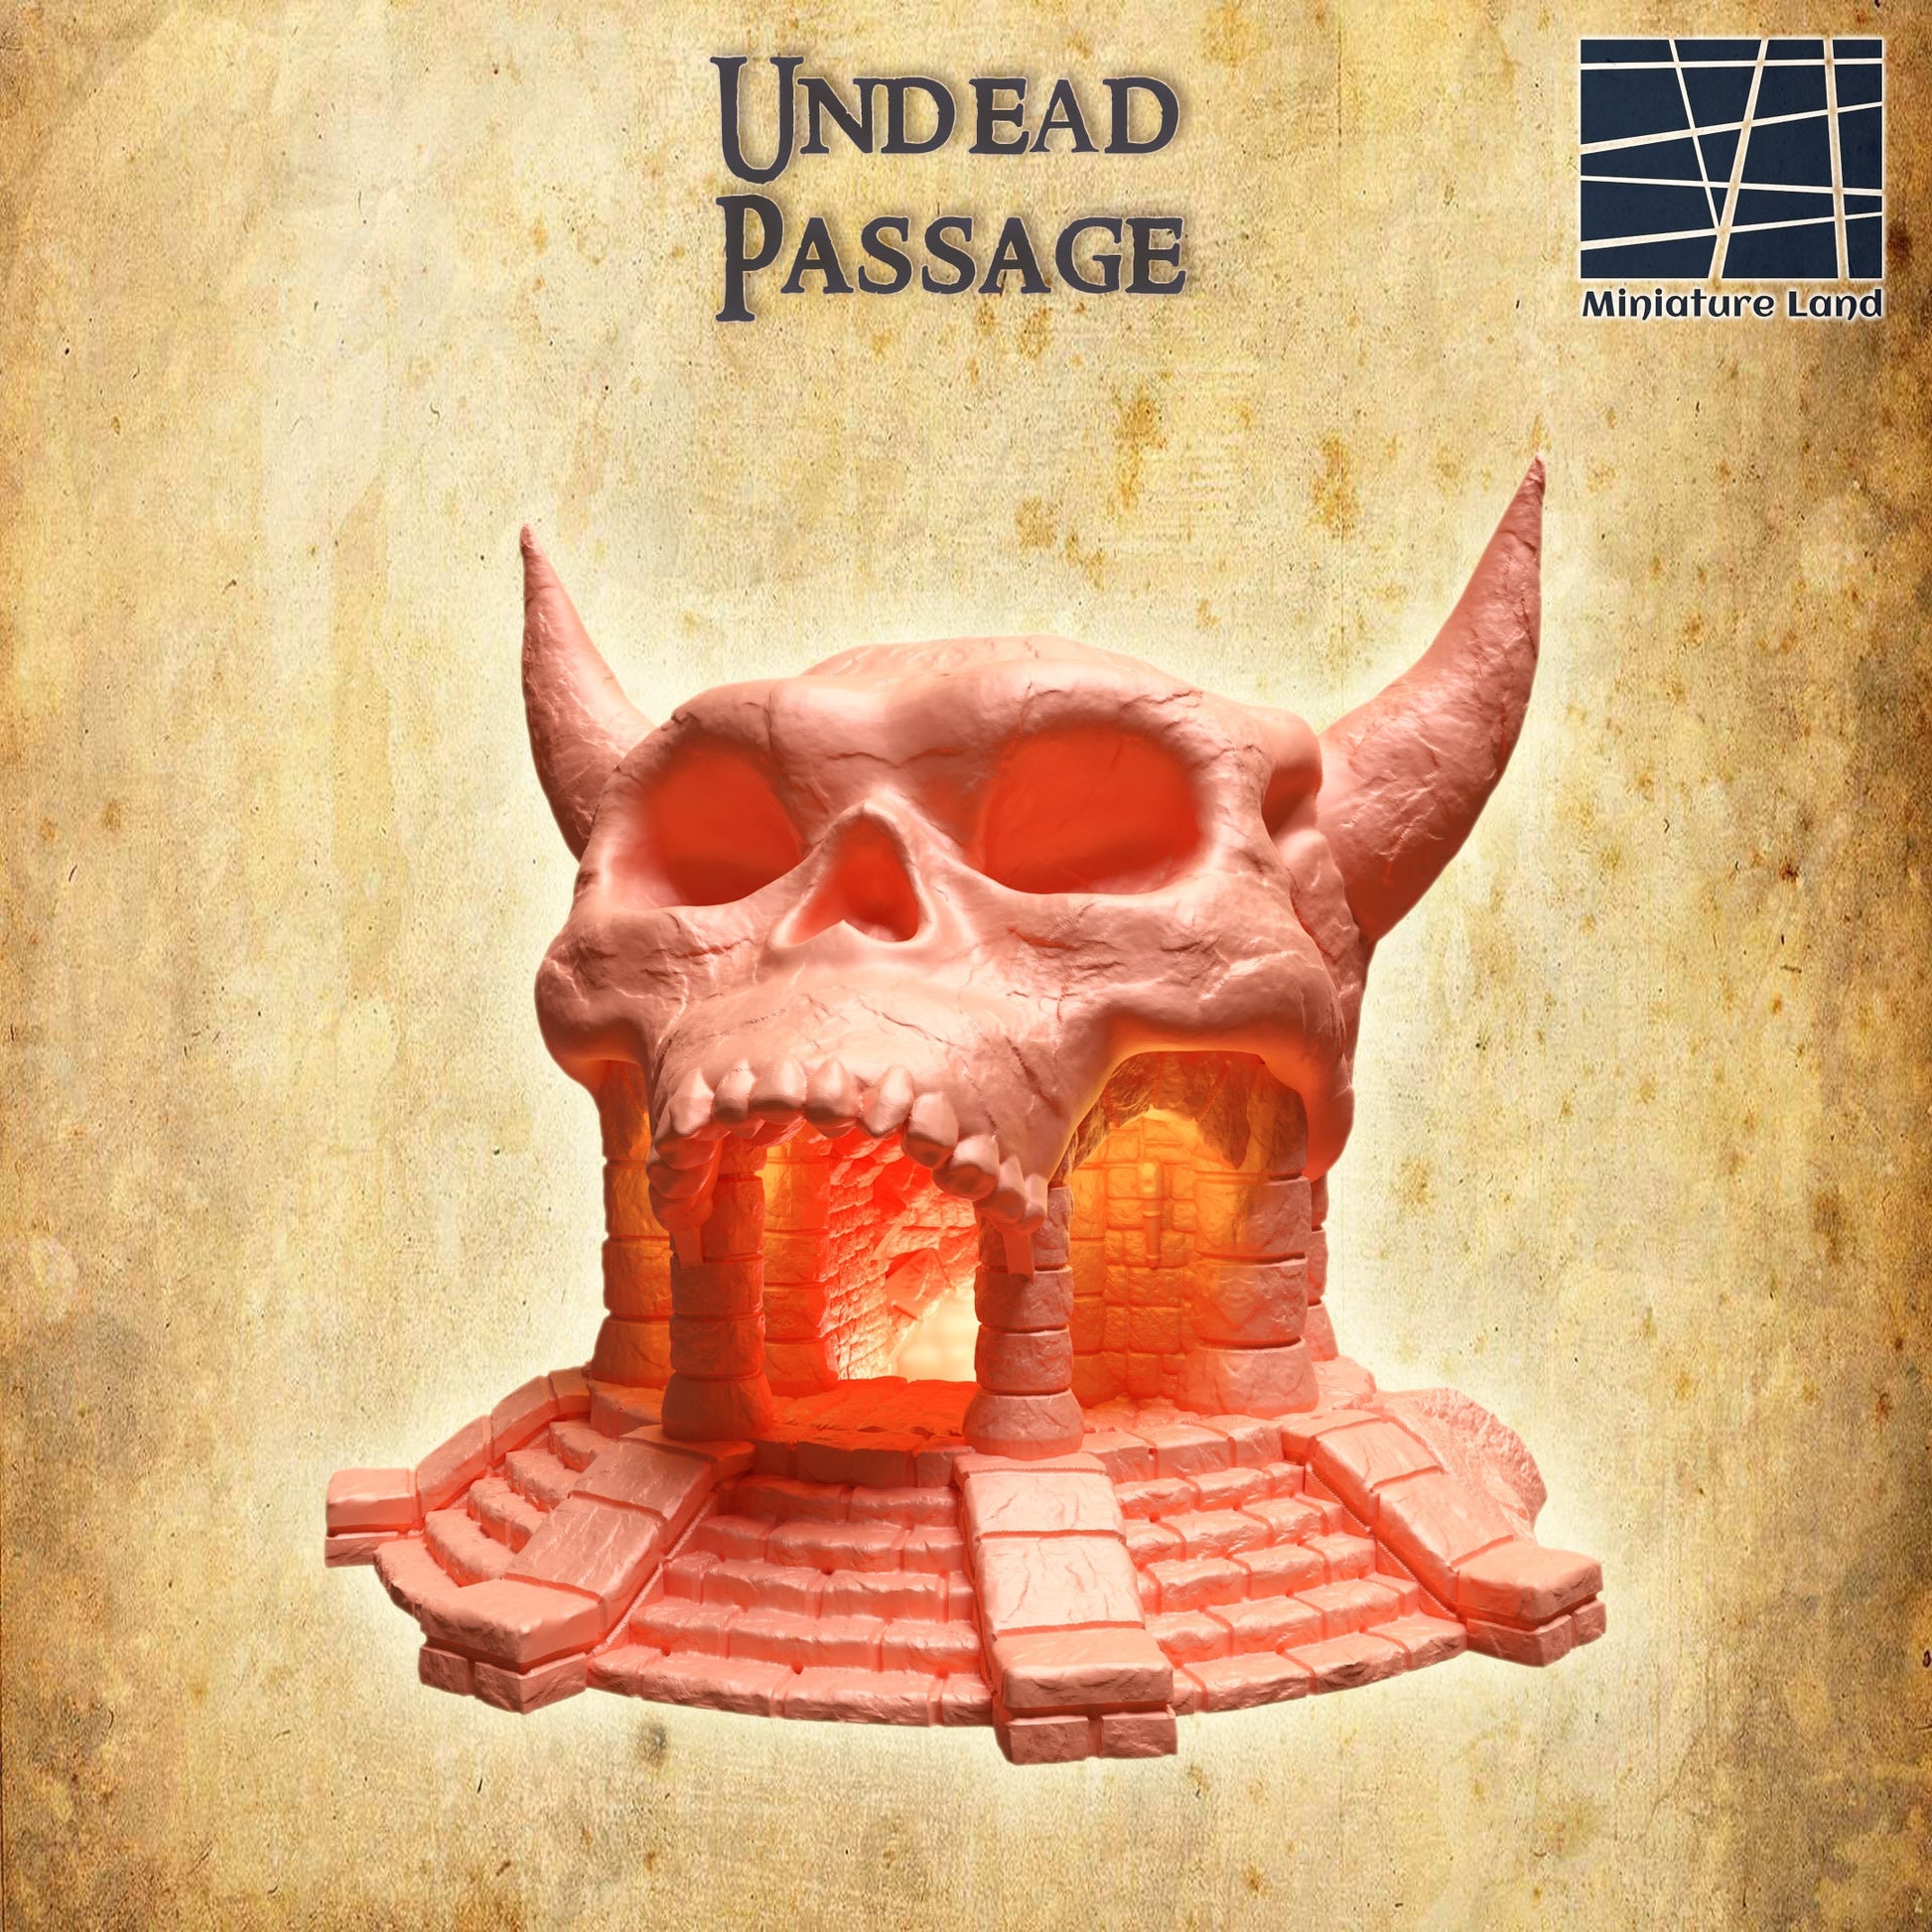 Undead Passage Entrance, Cave Entrance, Undead, Skull Entrance